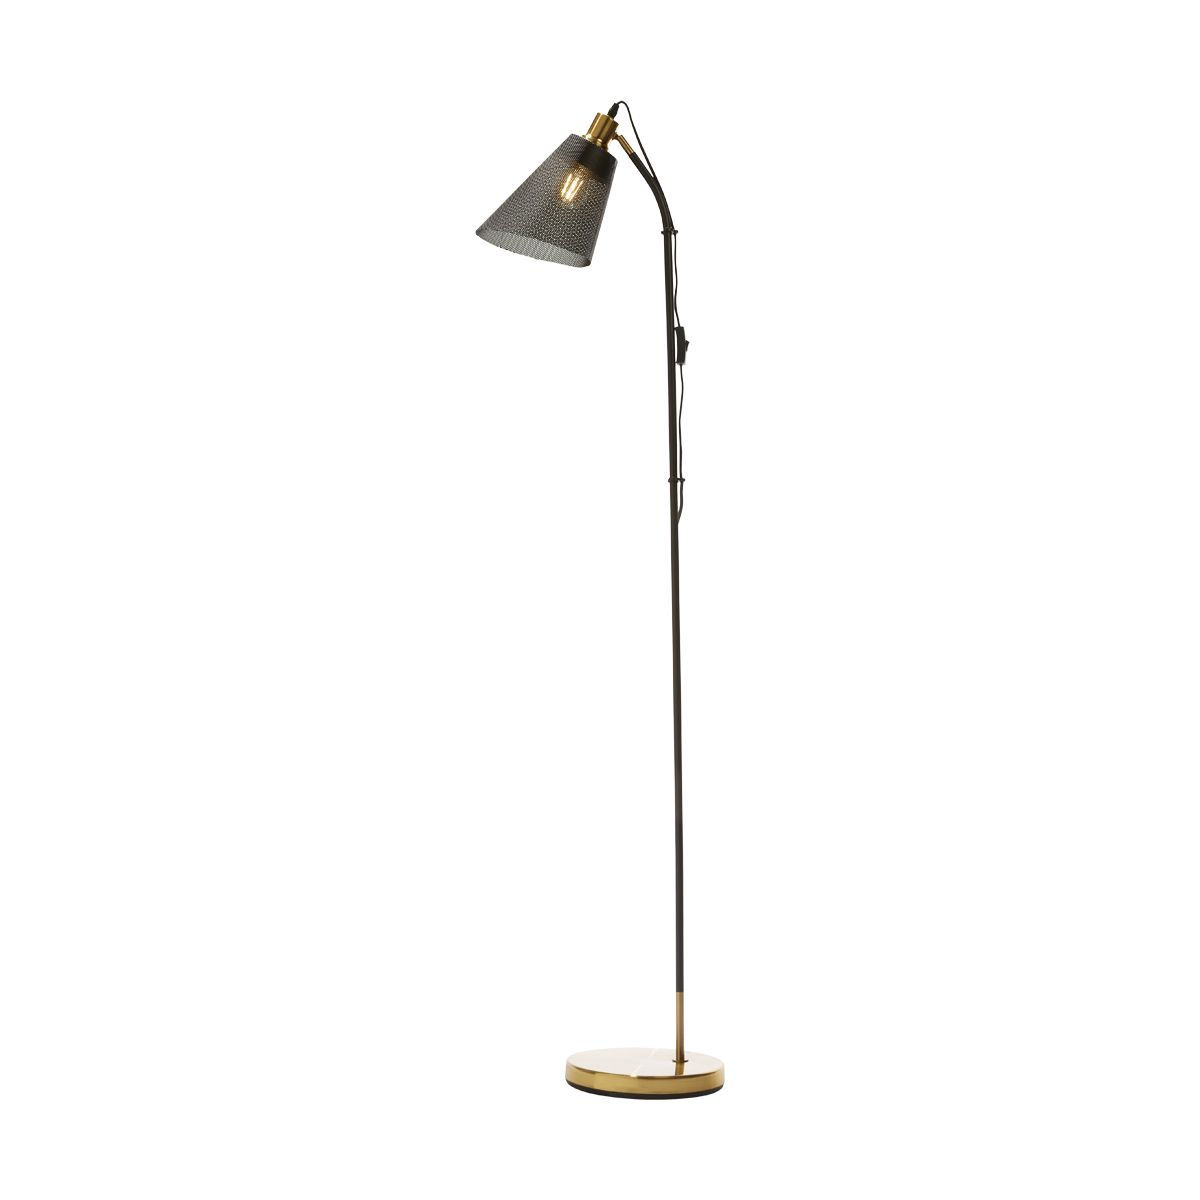 Mesh Shade Floor Lamp Kmart Floor Lamp Lighting Home Decor regarding proportions 1200 X 1200